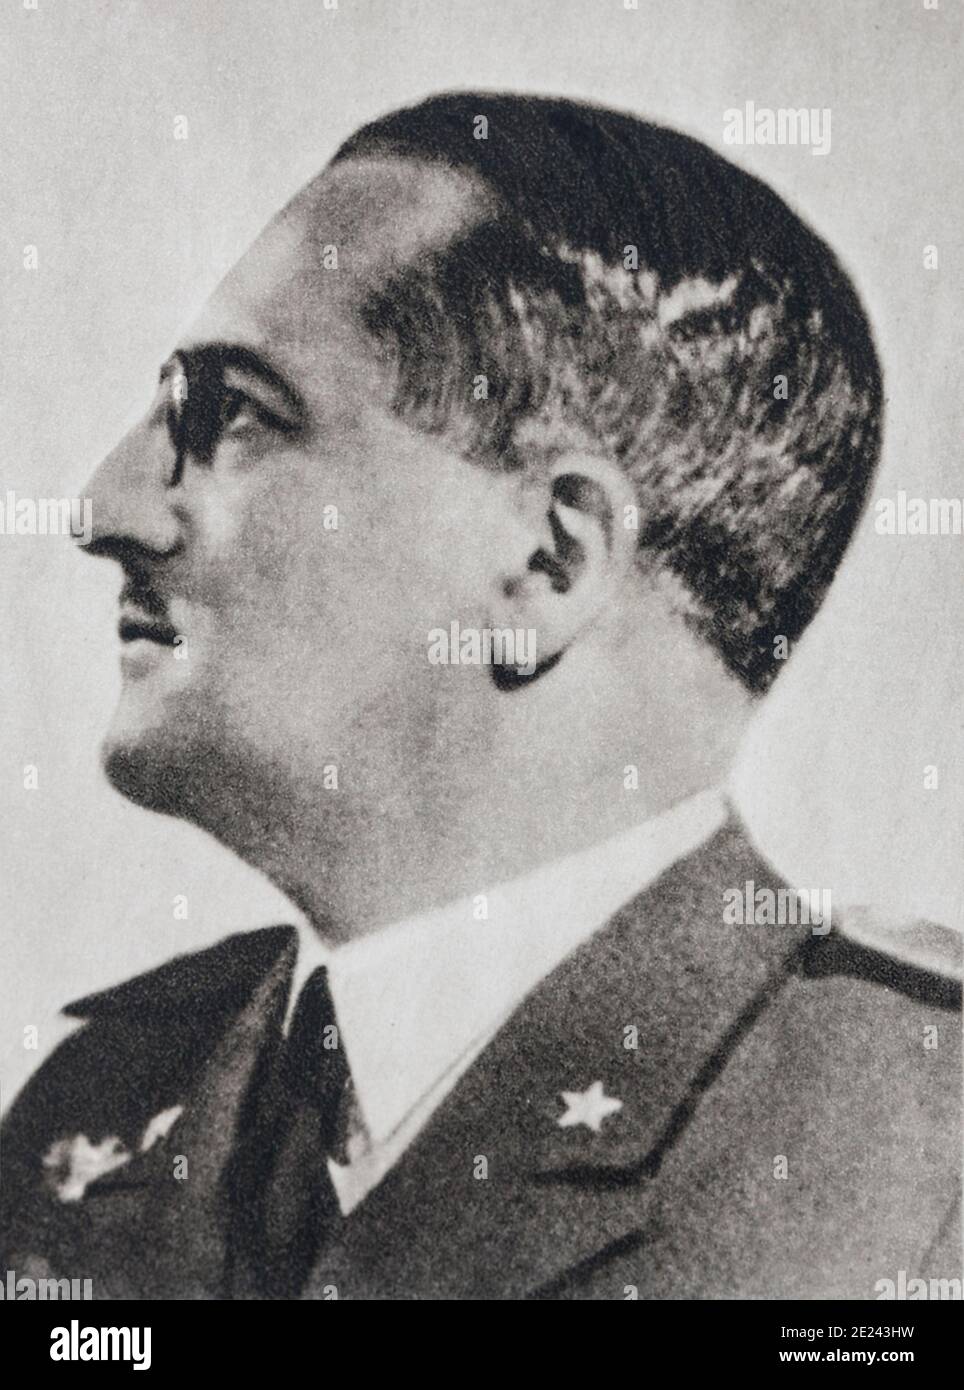 Generale Ugo Cavallero (1880 - 1943) era un italiano comandante militare prima e durante la Seconda Guerra Mondiale. Egli è stato un destinatario del cavaliere del croce del Foto Stock